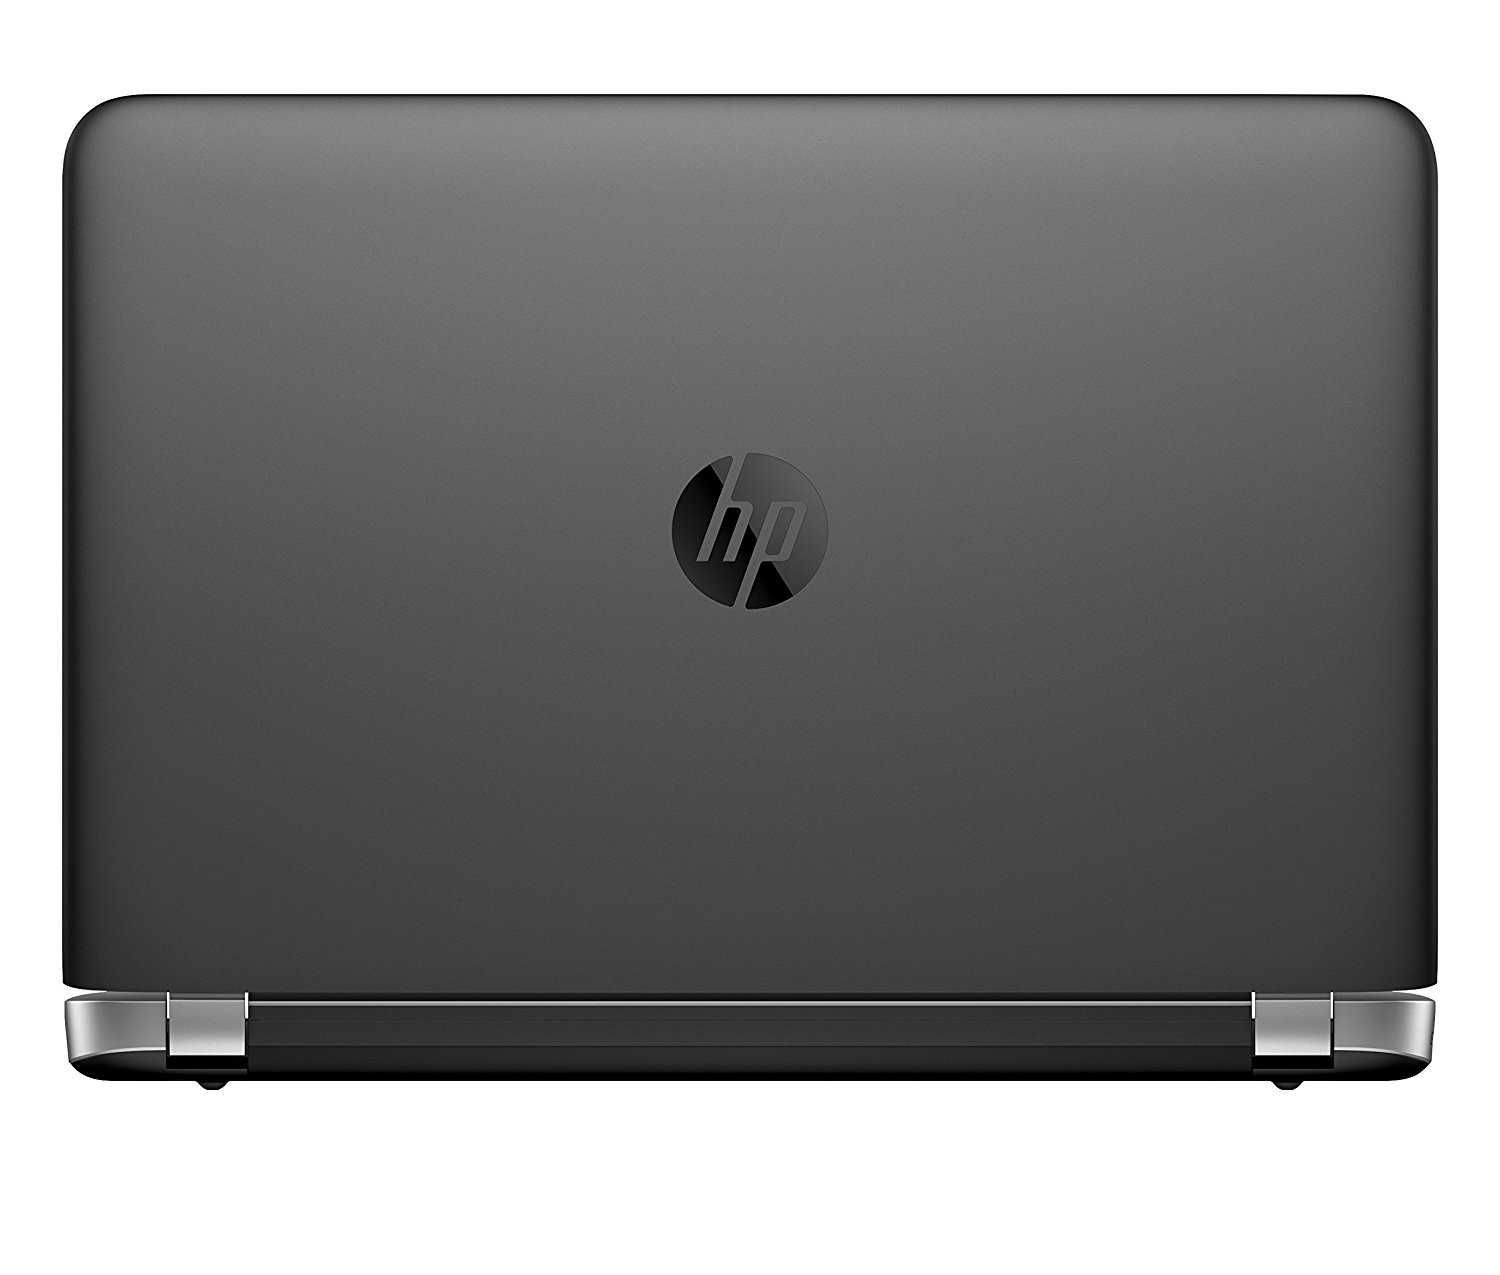 HP LED 17.3" Full HD i3, 6gb, 1.0 terra sshd, ati radeon, bit-audio